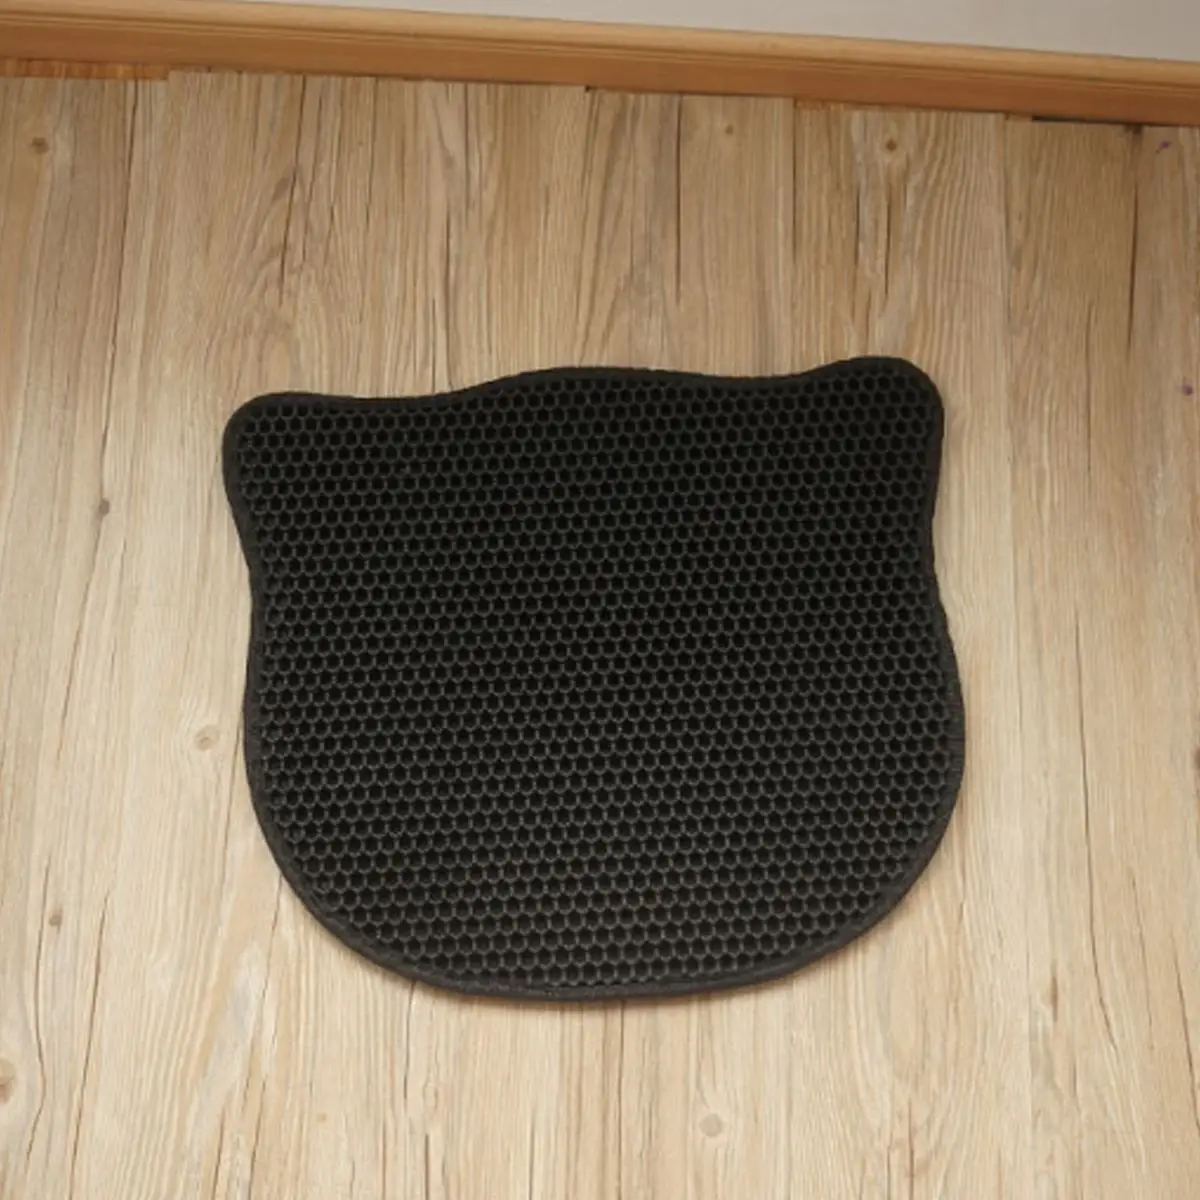 Складной коврик для кошачьего лотка, водонепроницаемый сотовый просеивающий коврик, защитный коврик для пола, экологически чистый EVA пенопластовый коврик для мусора - Цвет: Черный